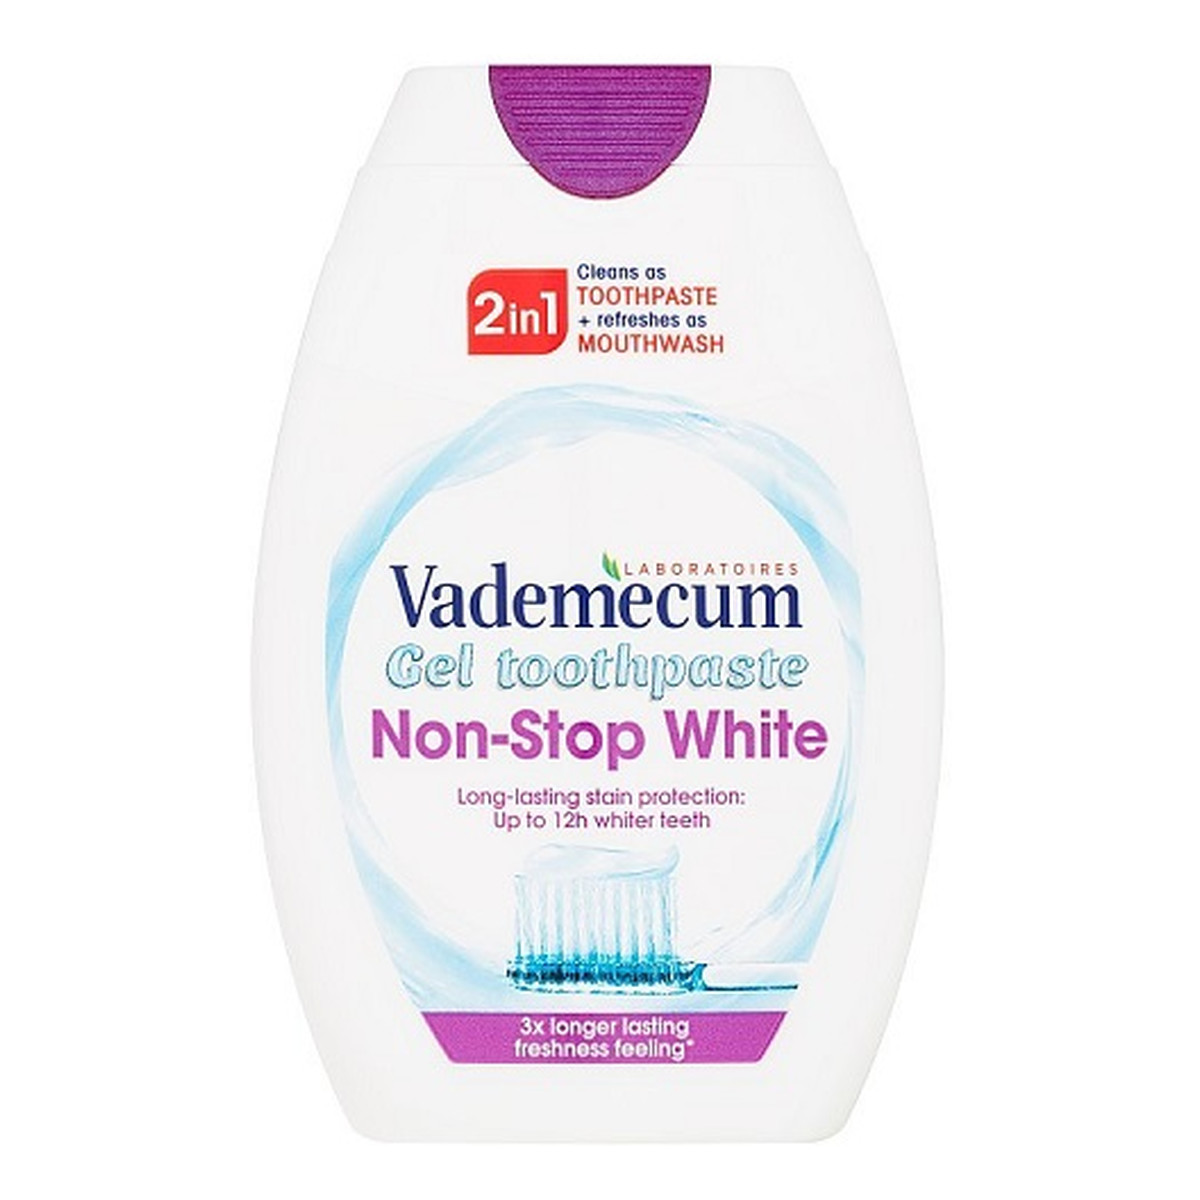 Vademecum 2in1 toothpaste&mouthwash non-stop white pasta do zębów i płyn do płukania jamy ustnej 75ml